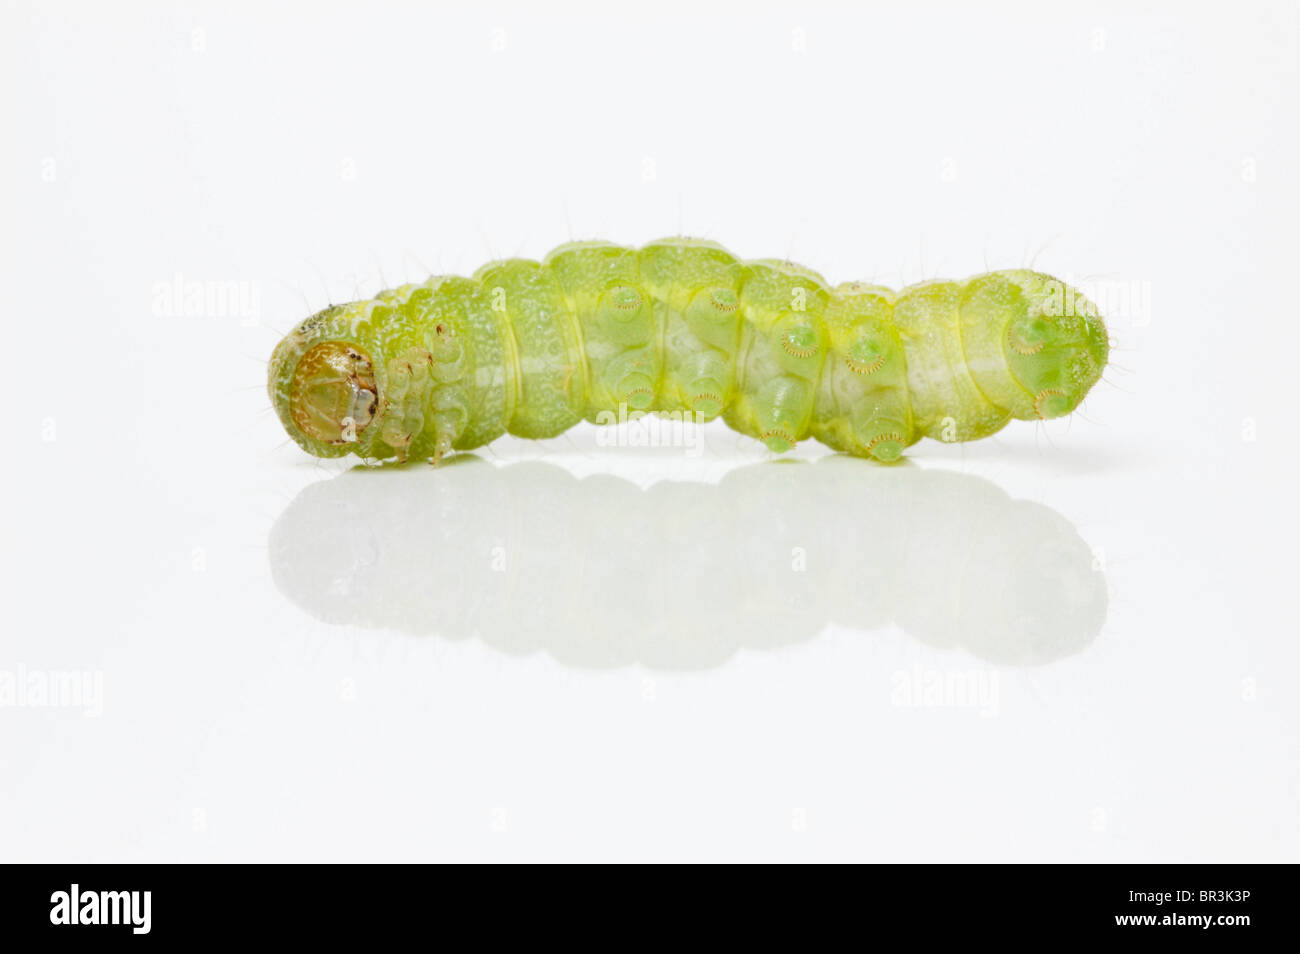 Caterpillar verde sobre blanco - jugar muertos; larva de la polilla de la col (Mamestra brassicae) Foto de stock